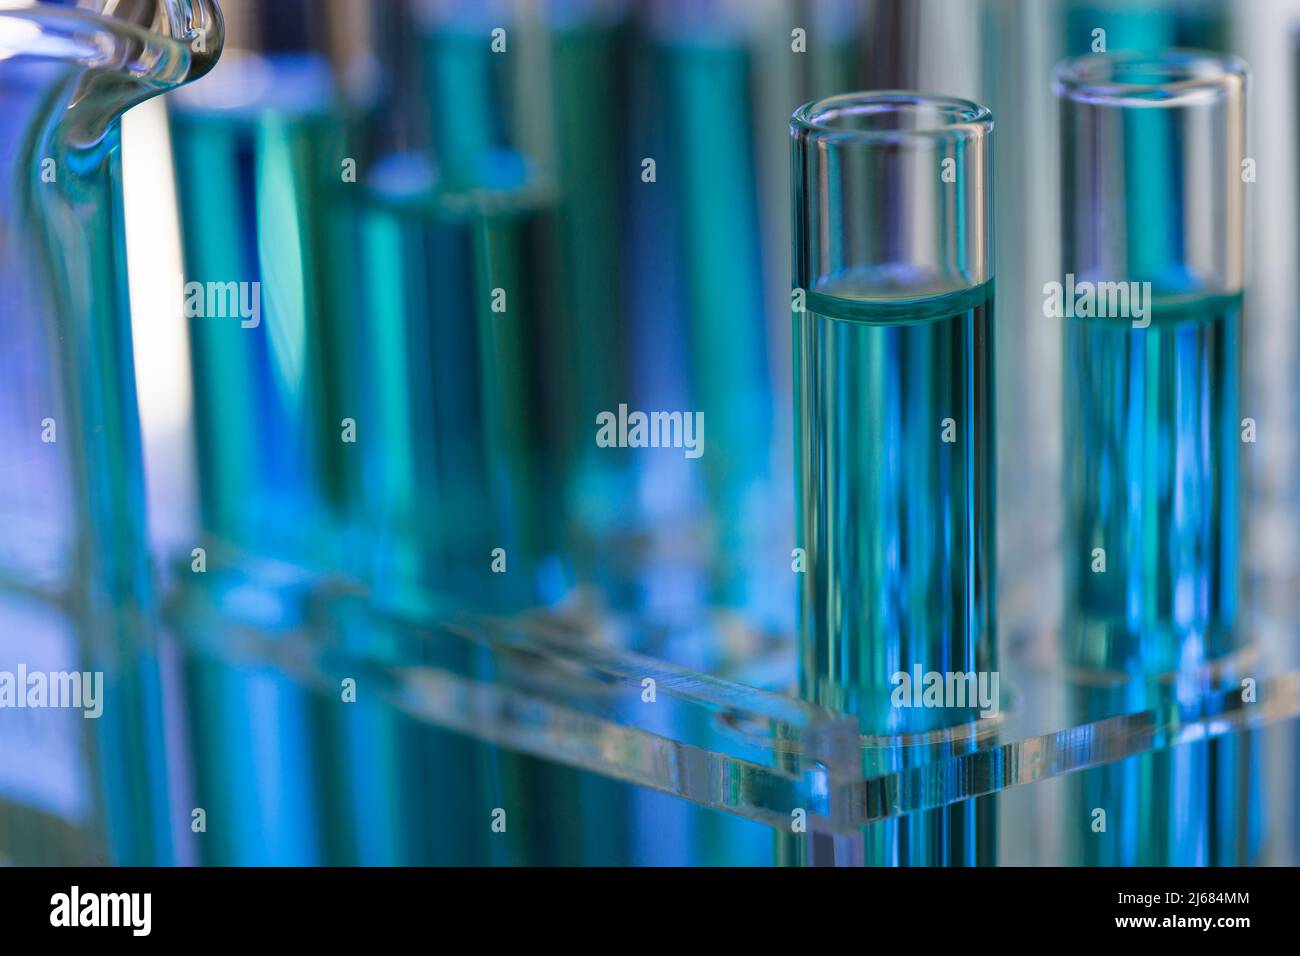 Tubes à essai soigneusement disposés contenant du réactif bleu dans le laboratoire de chimie - photo de stock Banque D'Images